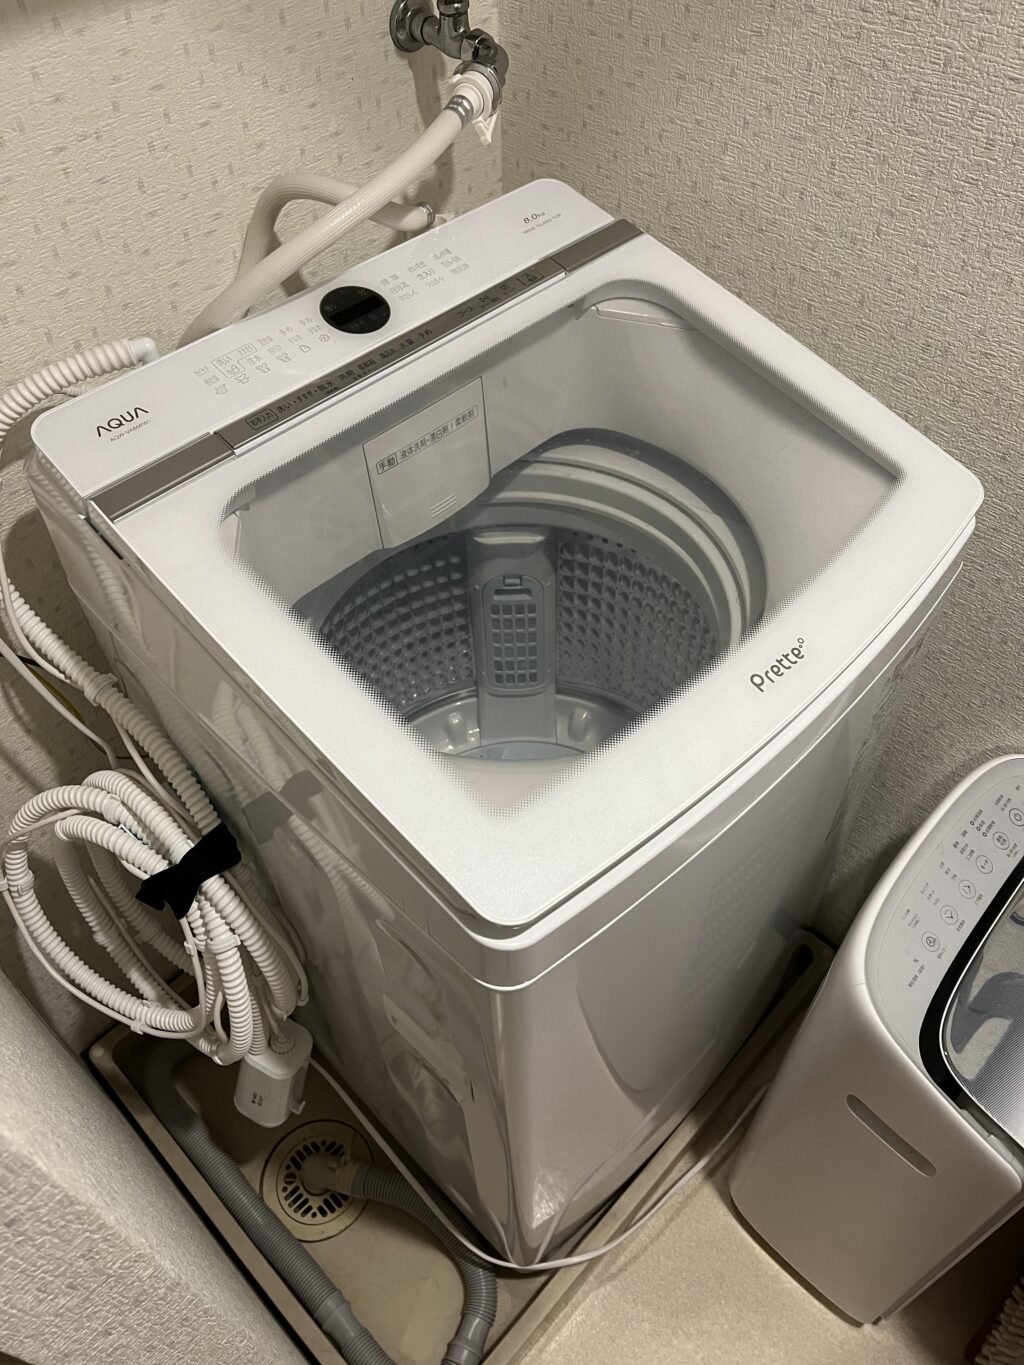 アクア AQW-VA8M全自動洗濯機aqua pretteの体験口コミレビュー!写真も紹介! | ウオッチングノート